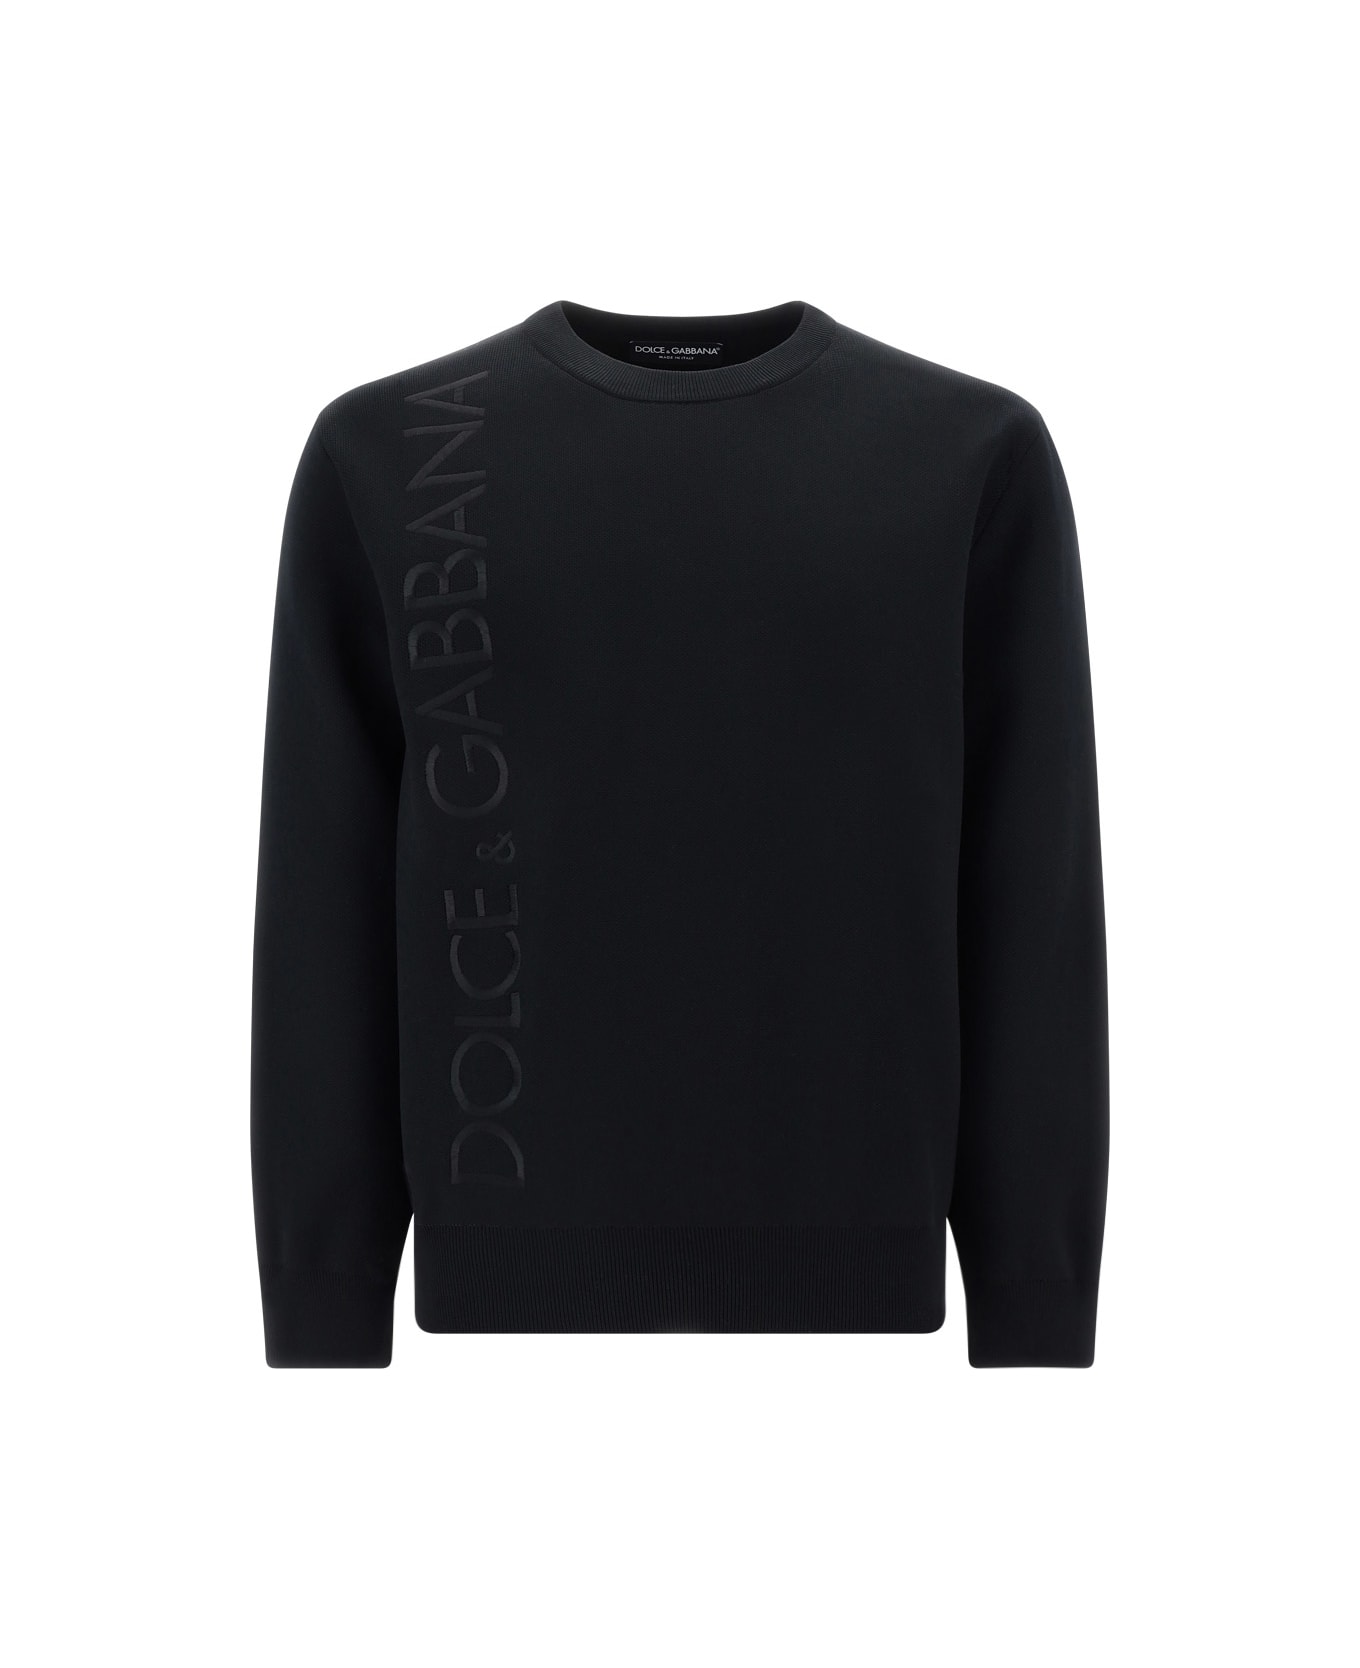 Dolce & Gabbana Sweatshirt - Nero